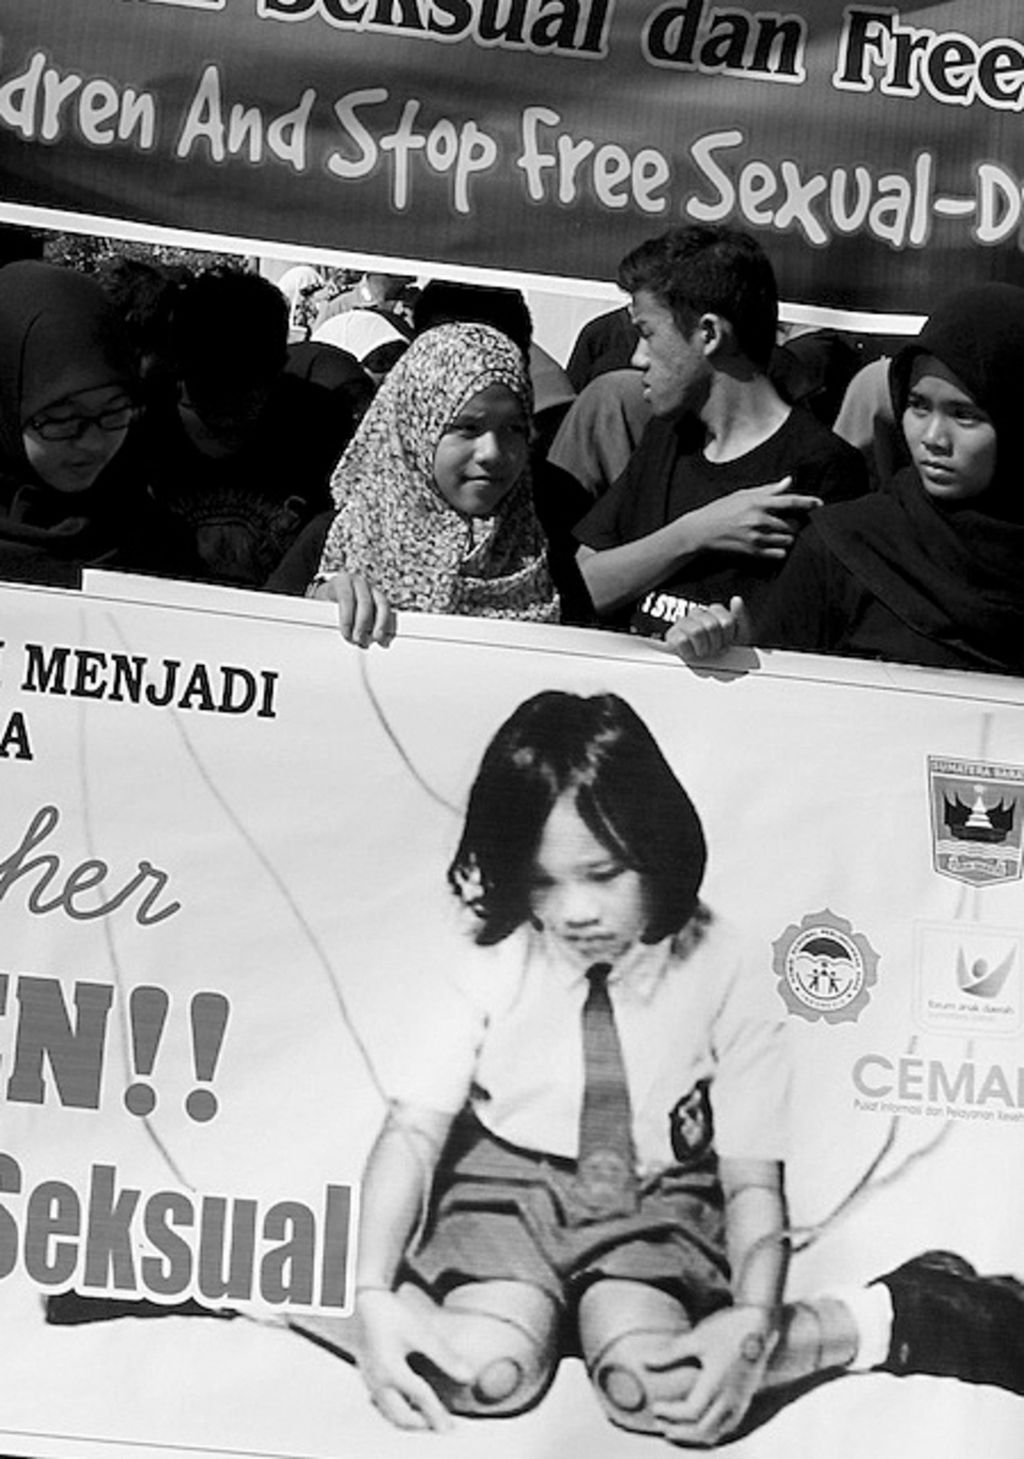 Pelajar dari berbagai wilayah di Sumatera Barat menggelar aksi solidaritas menyikapi maraknya kasus kekerasan seksual terhadap anak di Indonesia di kawasan Jalan Sudirman Kota Padang, Minggu (25/5). Lewat aksinya, mereka mengajak warga untuk ambil bagian dalam upaya perlindungan terhadap anak-anak dari tindakan asusila.